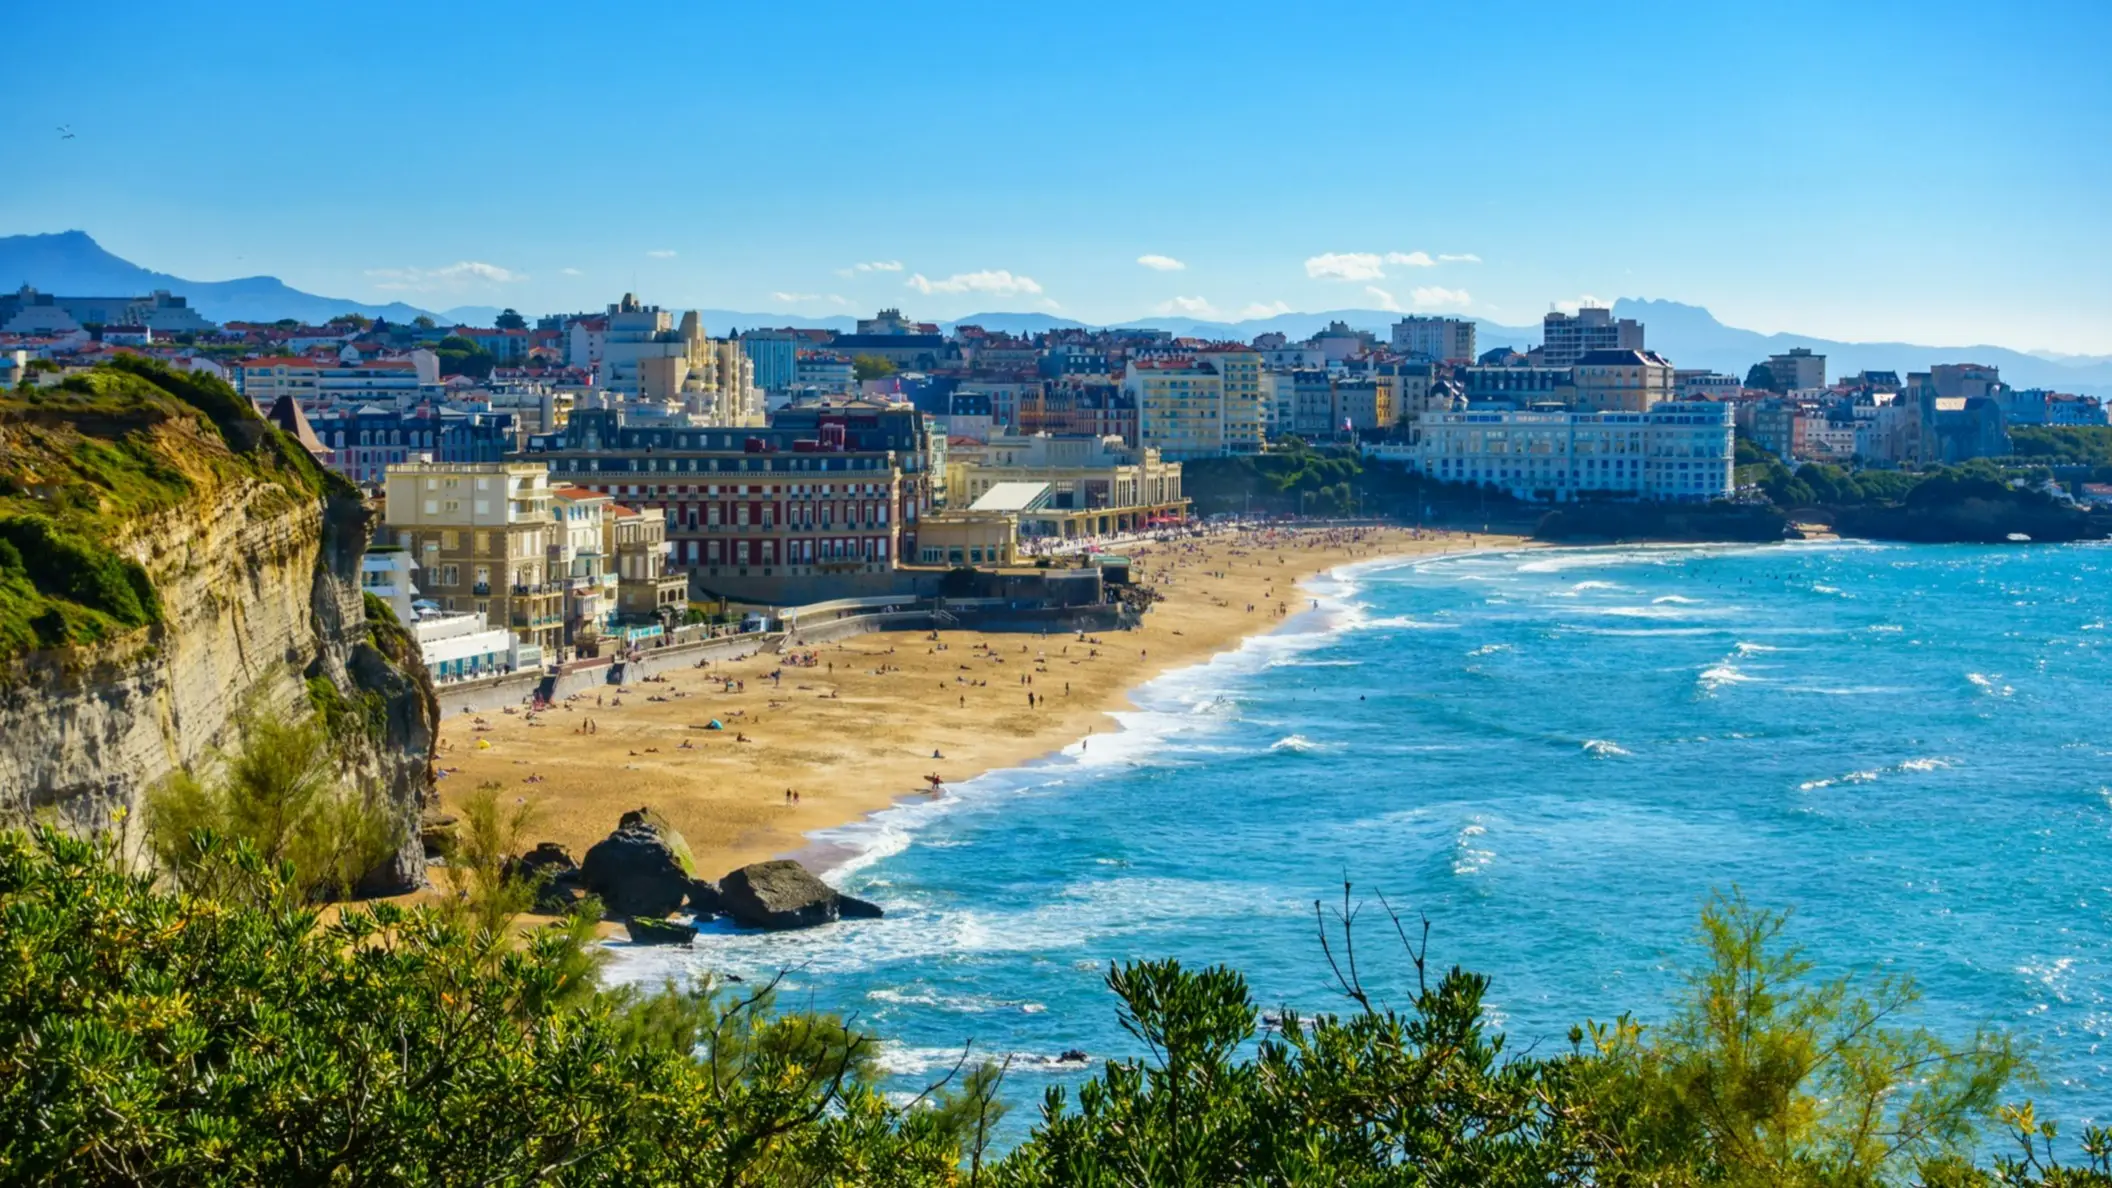 Die Bucht von Biarritz Grande Plage in Frankreich mit Aussicht von einem Viewpoint und Blick auf die Stadt sowie das Meer bei blauem Himmel.

